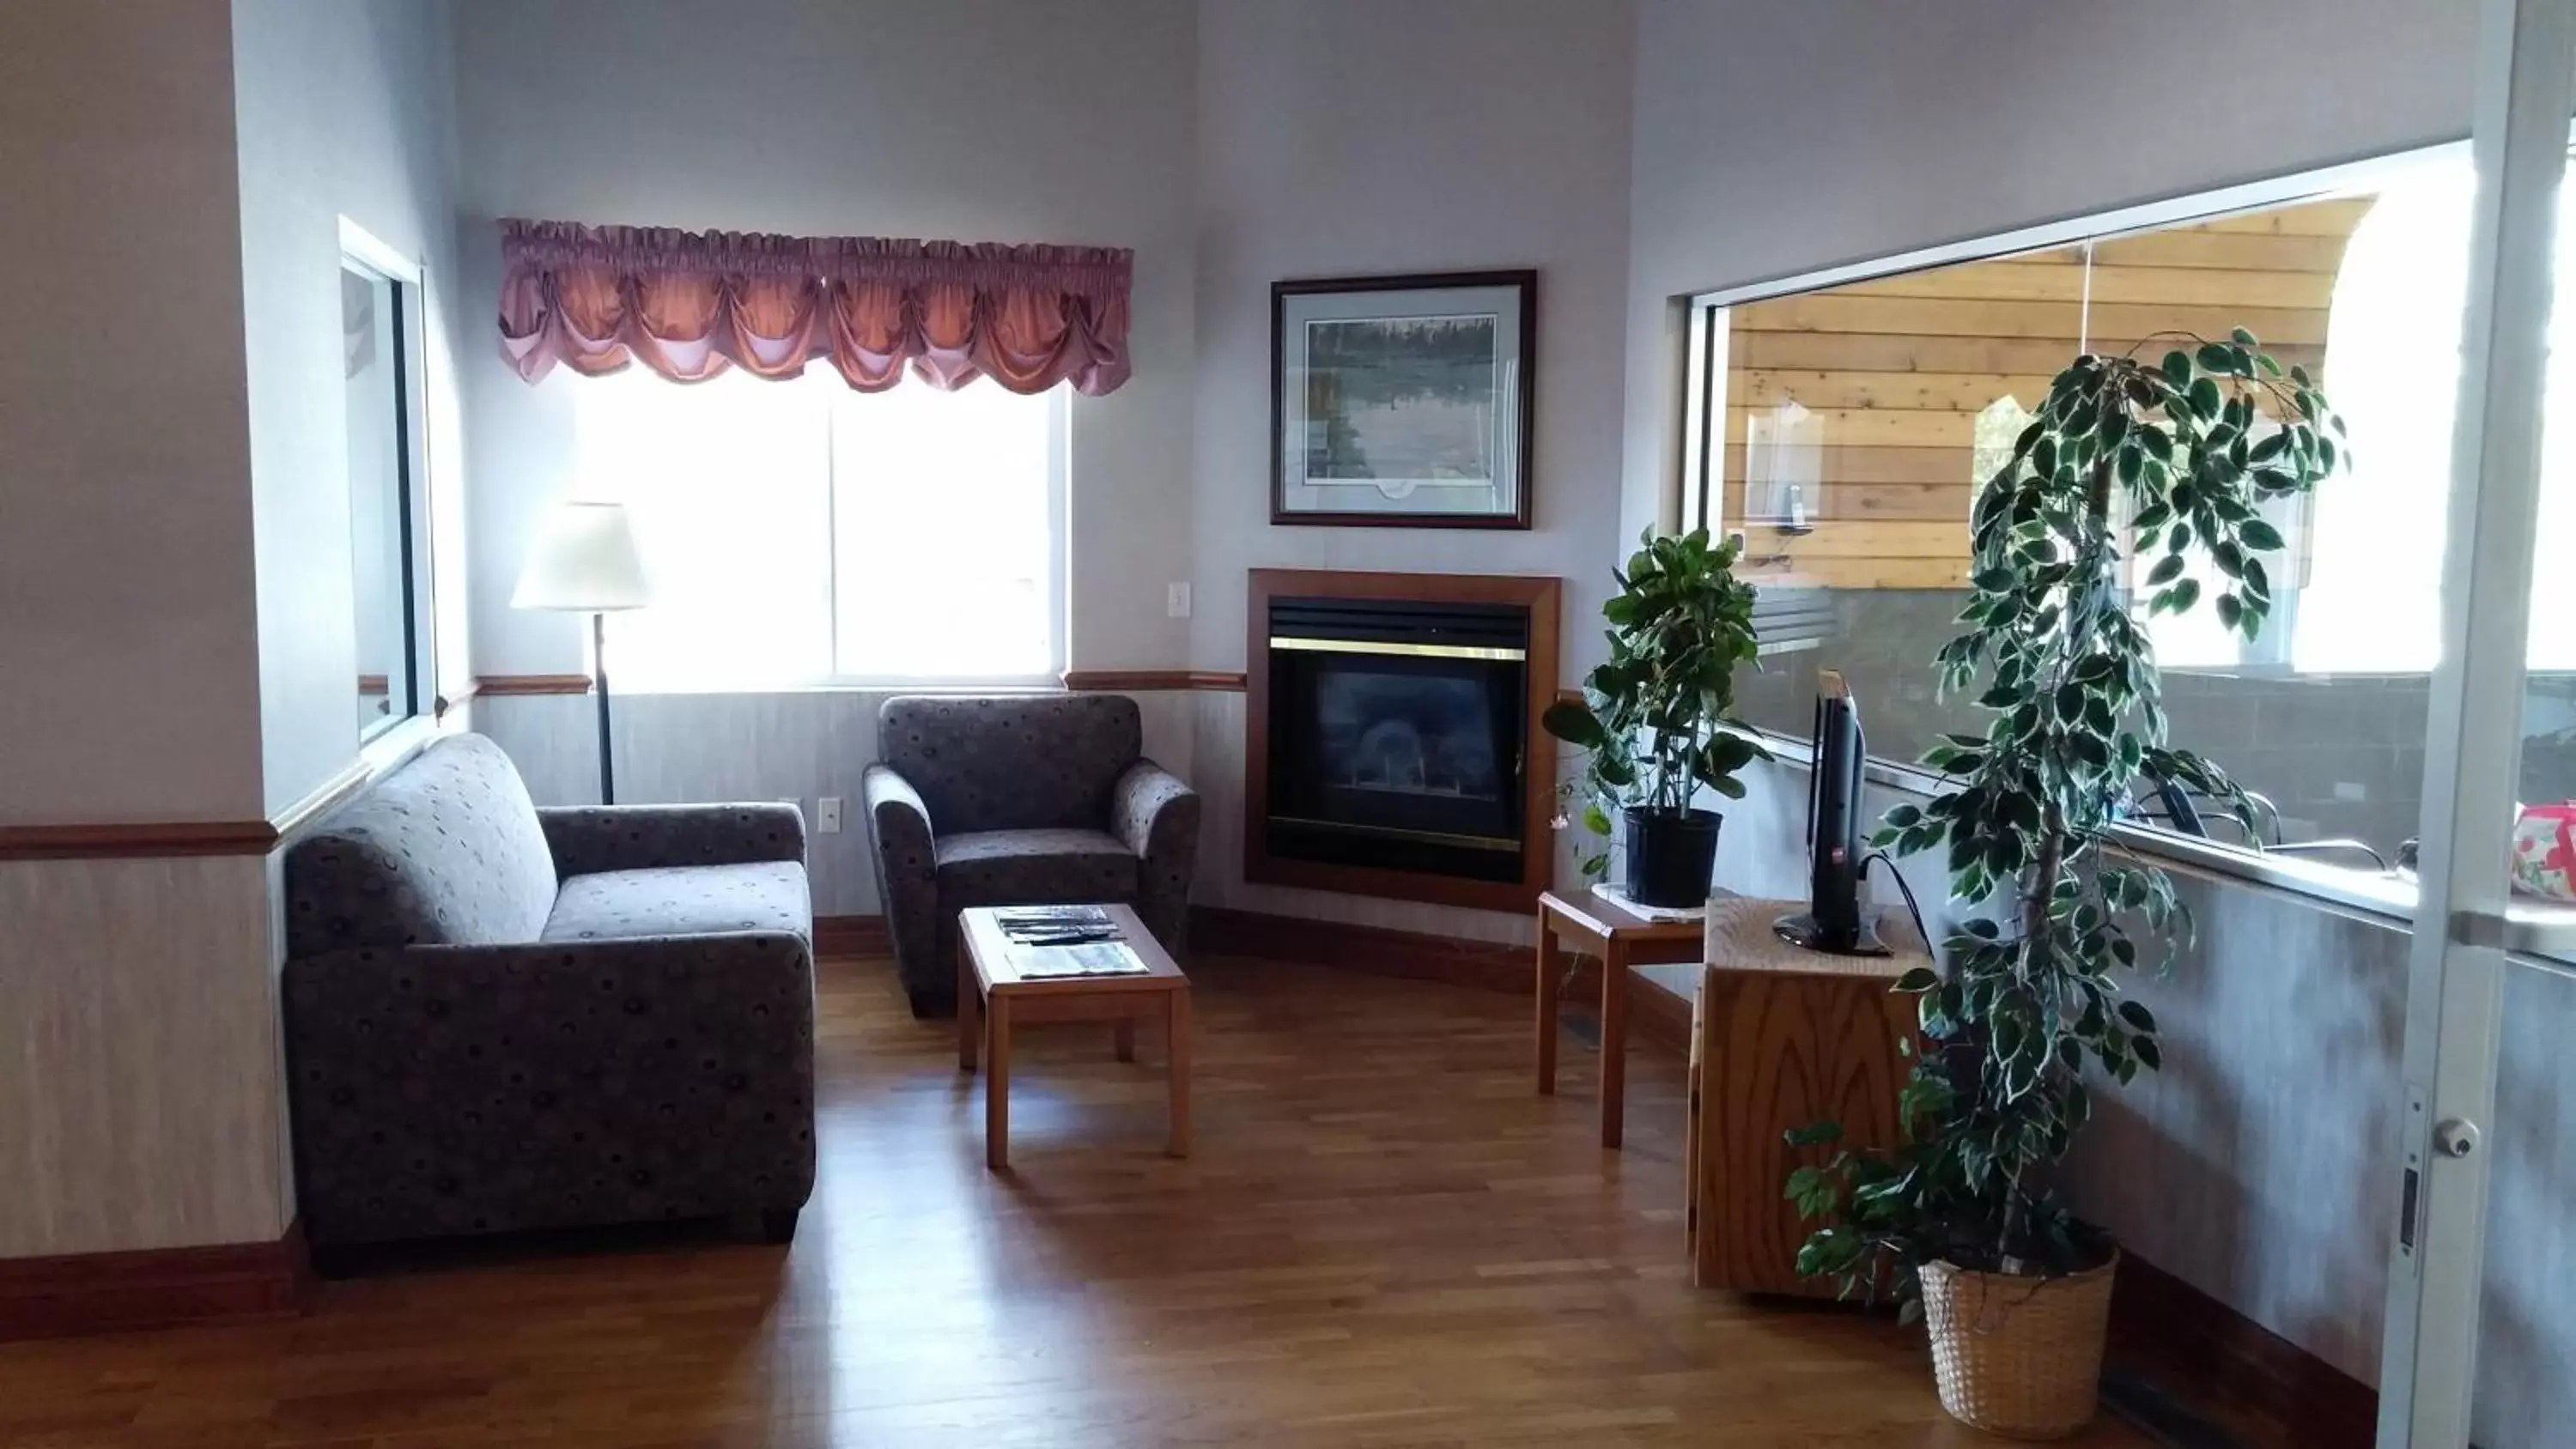 Lobby or reception, Seating Area in Northwoods Best Inn - Chetek